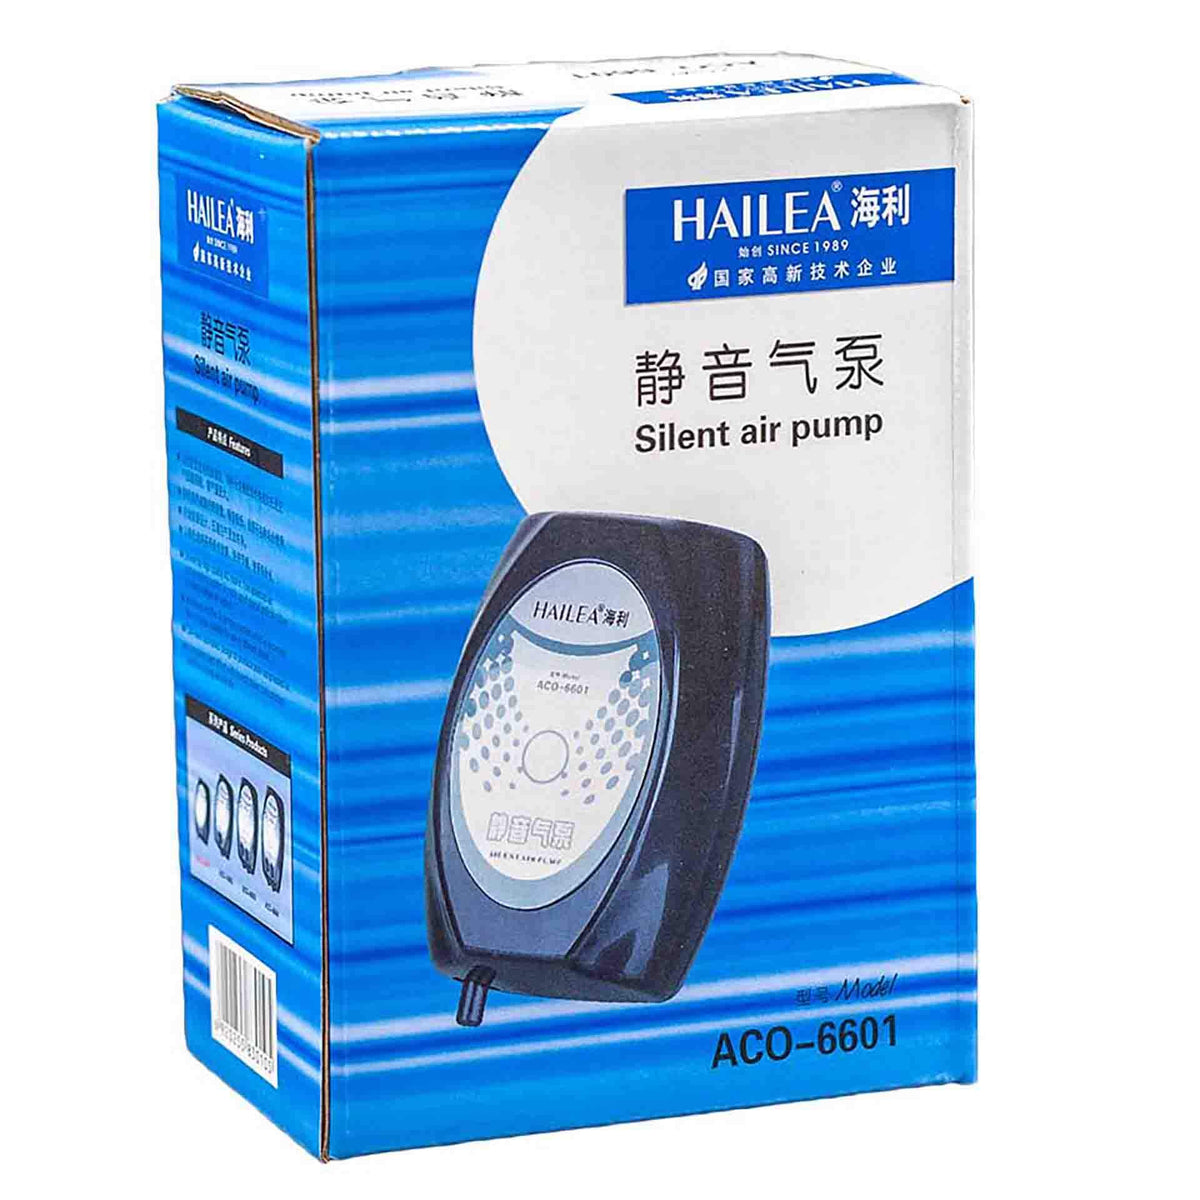 Hailea 66 Series Adjustable Silent Air Pump - 2.8L/min